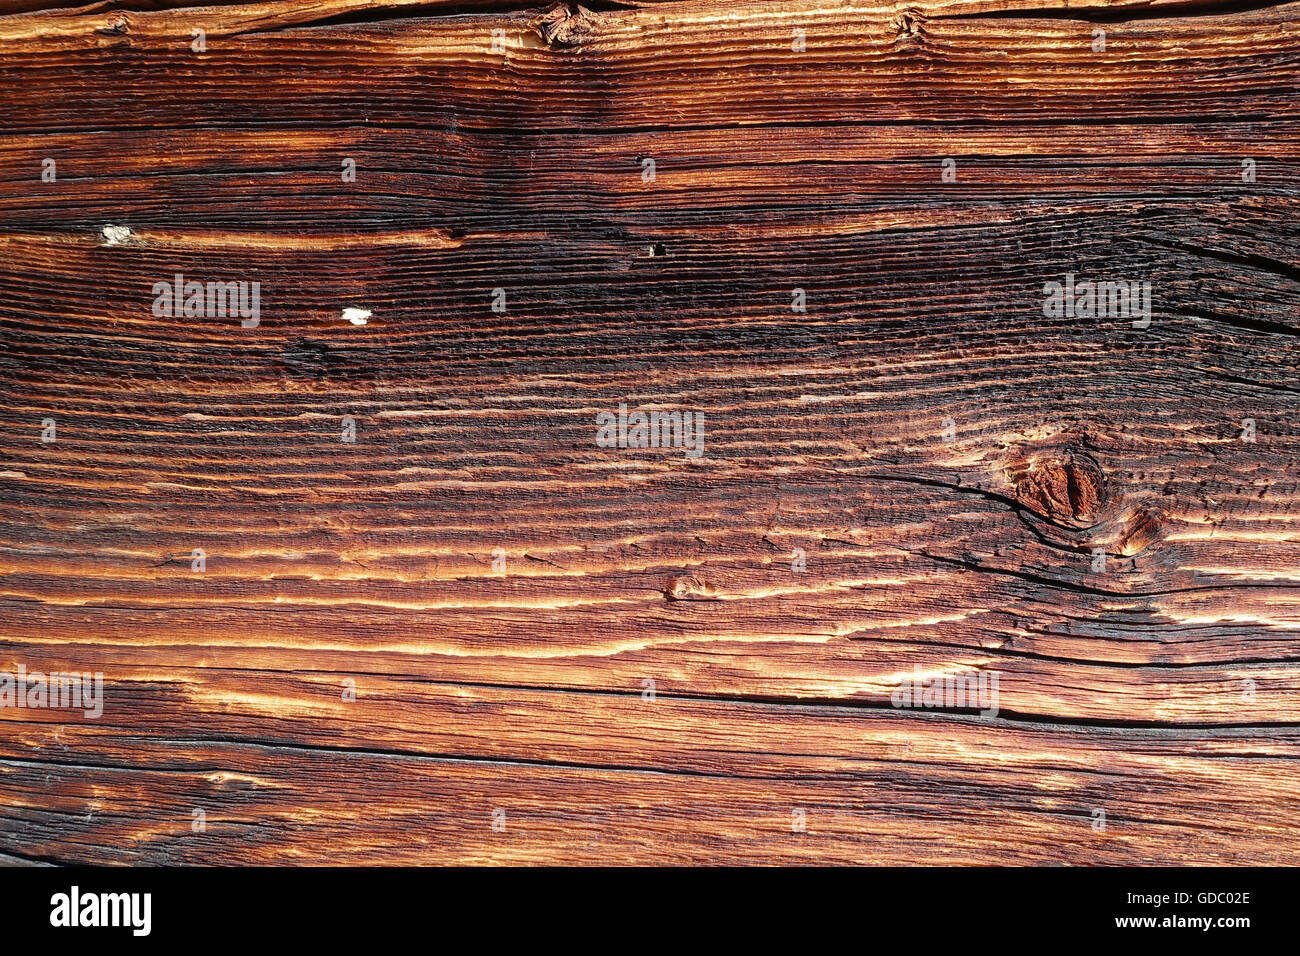 La Svizzera,l'Europa,Vallese,in legno, pareti in legno,marrone,dettaglio,vecchio,concetti, Foto Stock